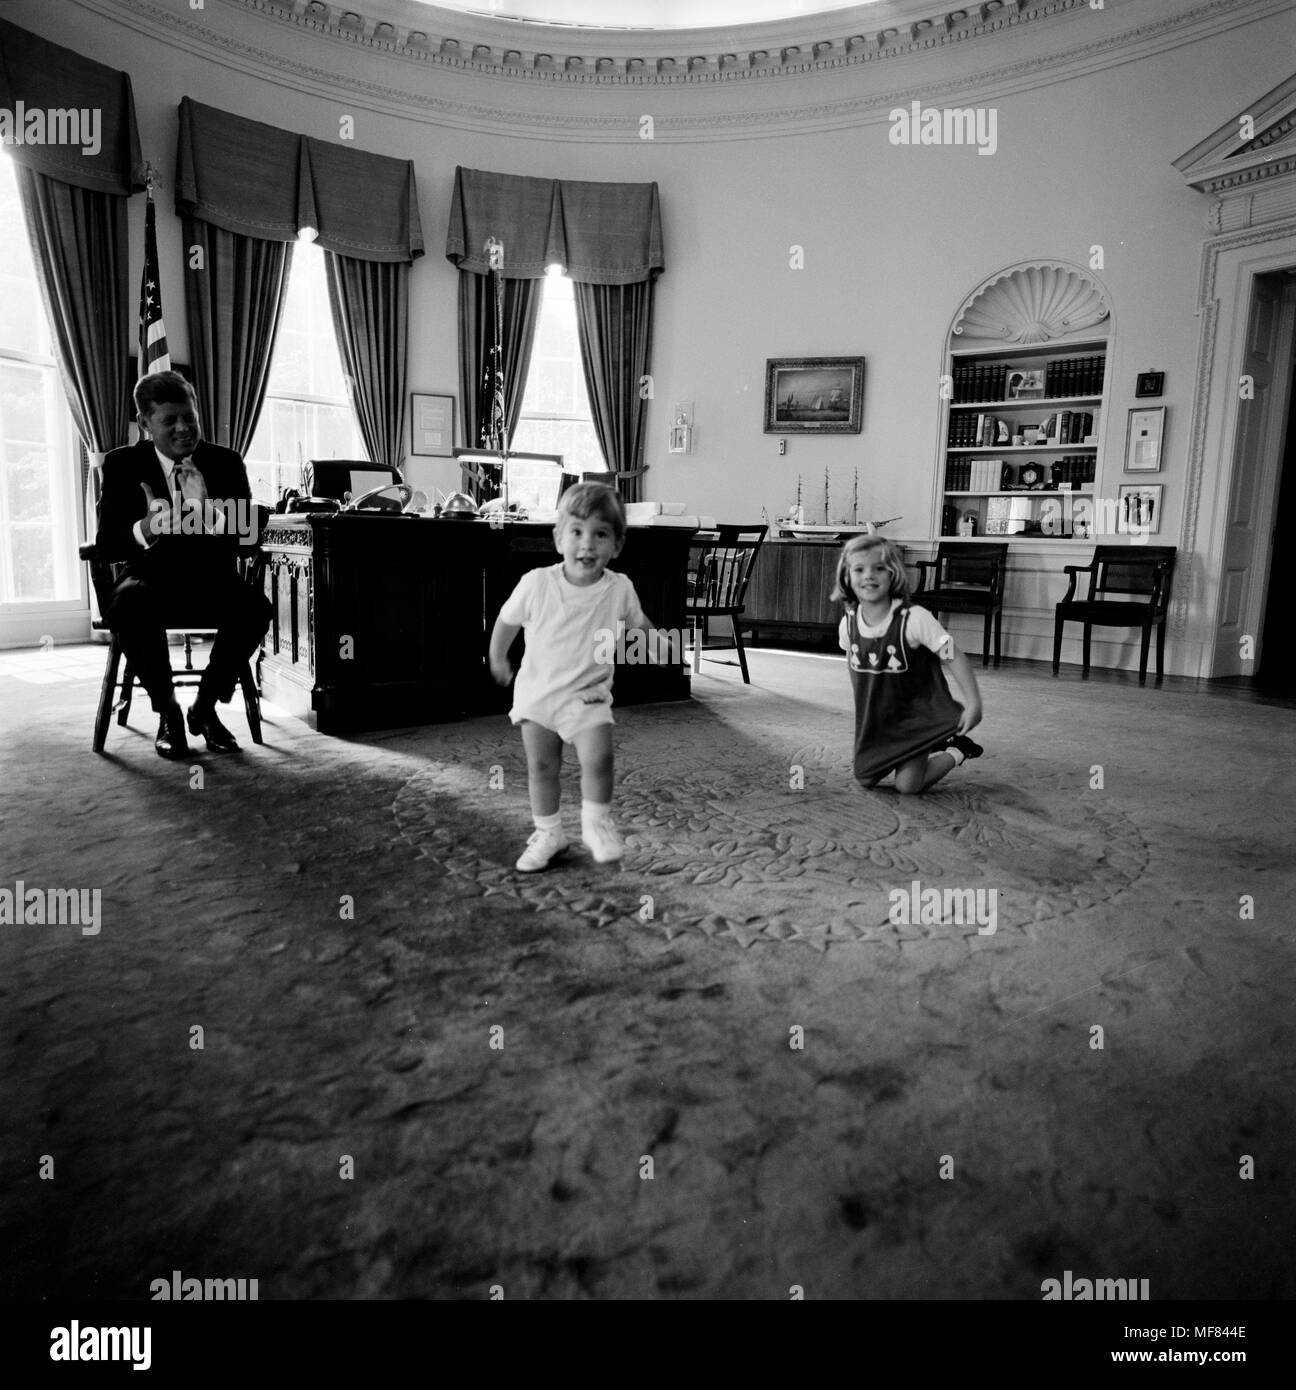 ST -441-12-62 10 Oktober 1962 Präsident Kennedy mit Caroline Kennedy und John F. Kennedy, Jr. Bitte credit' Cecil Stoughton. Weiße Haus Fotos. John F. Kennedy Presidential Library und Museum, Boston' Stockfoto